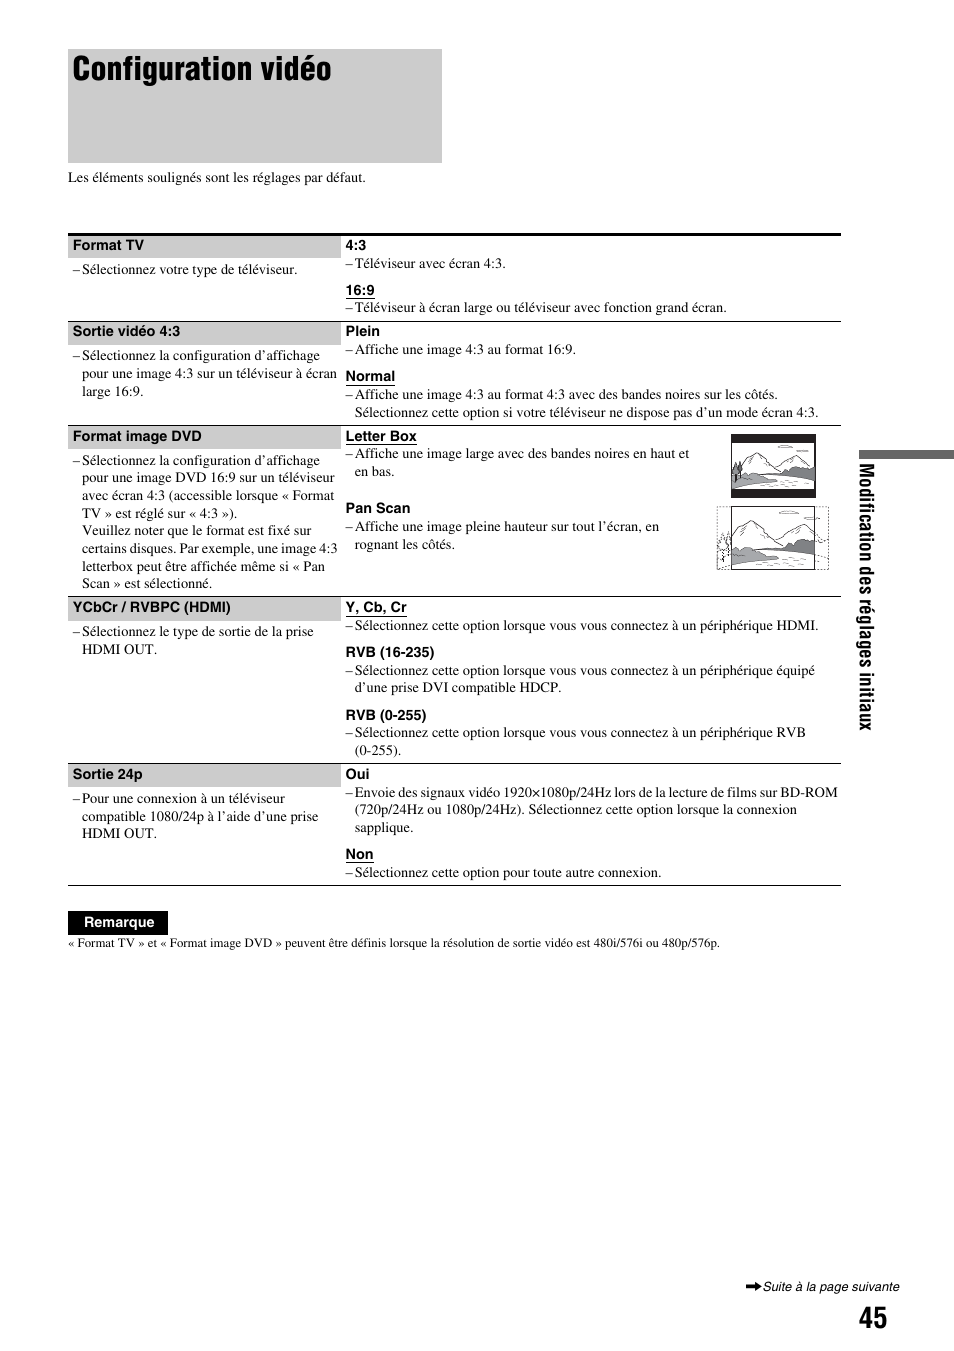 Configuration vidéo, Modification des réglages initiaux | Sony BDP-S300 Manuel d'utilisation | Page 45 / 67